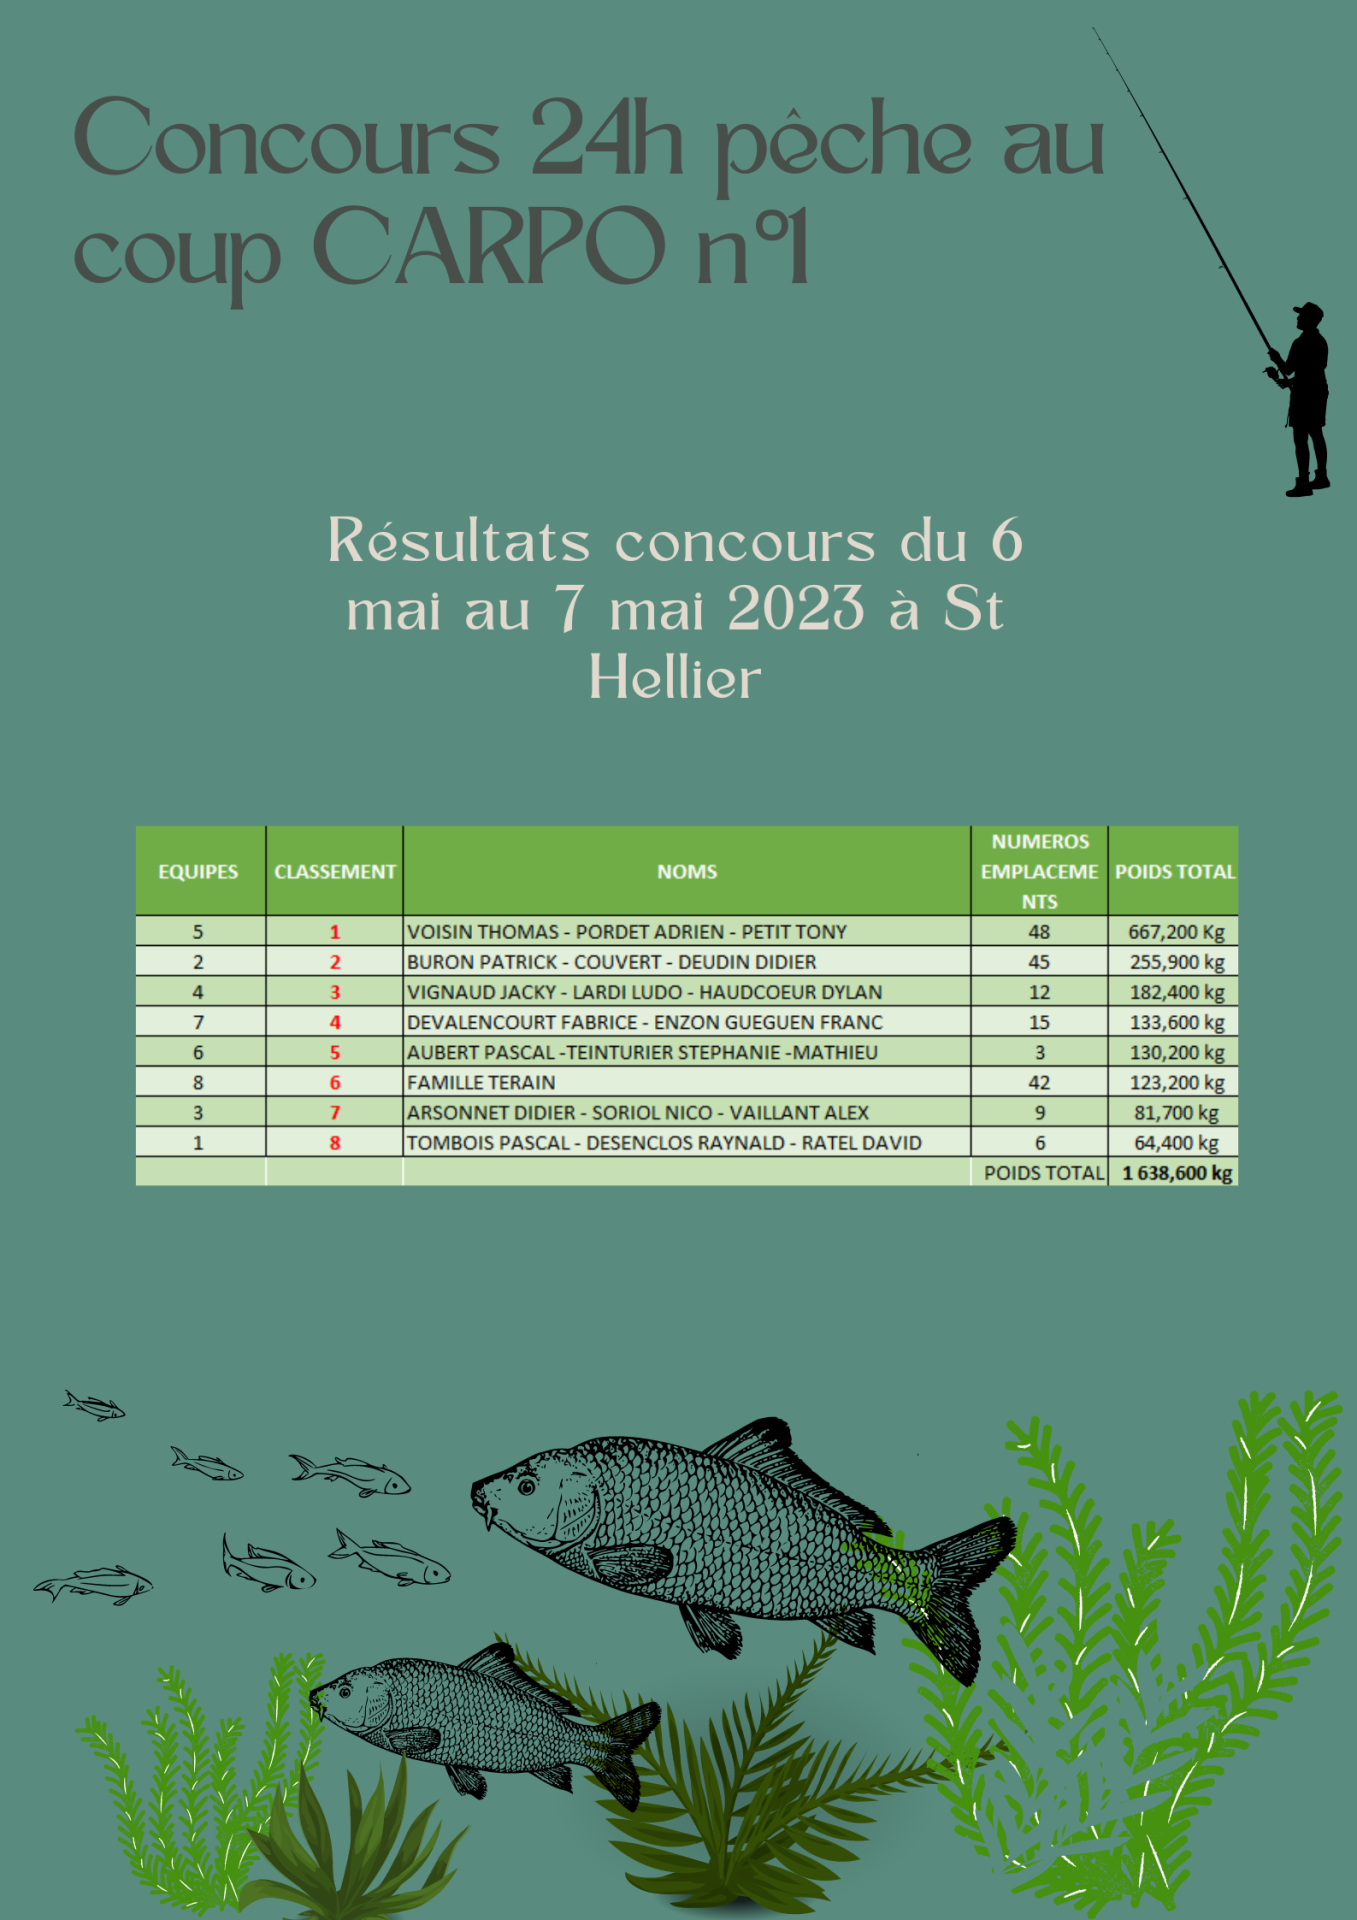 Concours 24h pêche au coup CARPO n°1